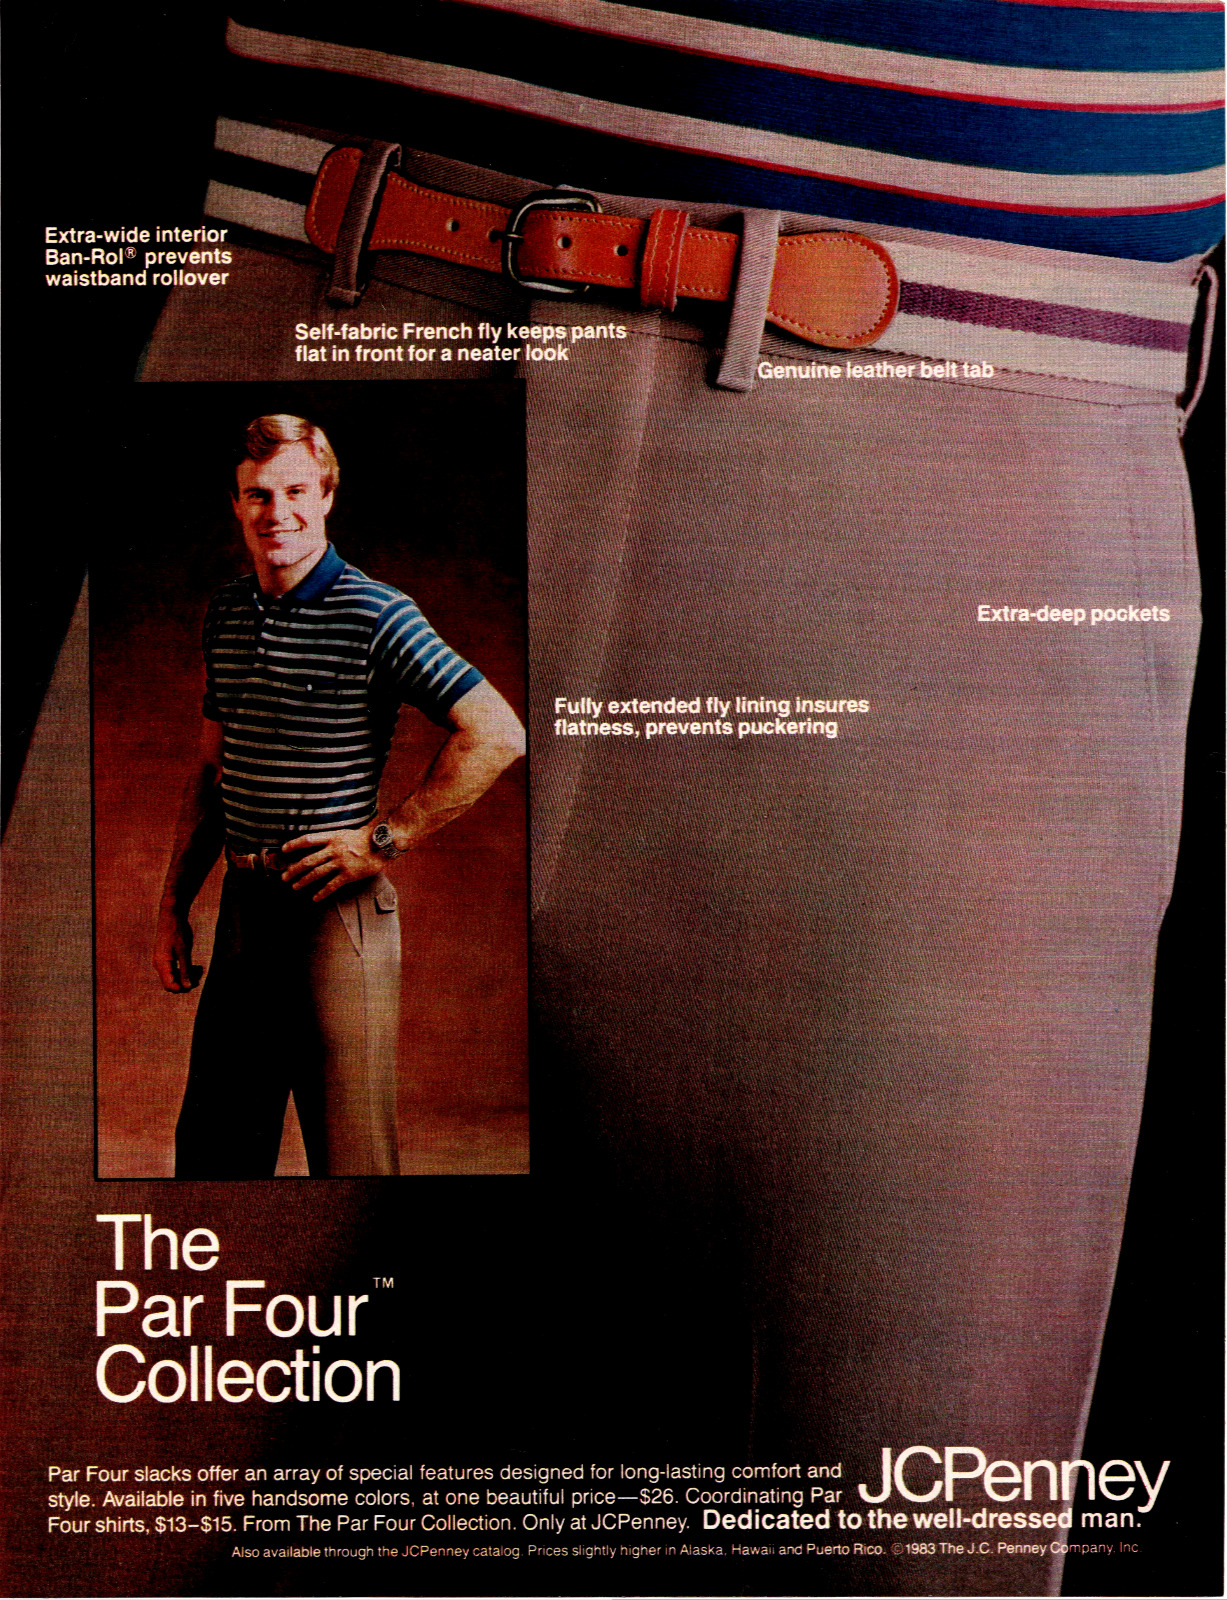 1983JC Penney The Par Four Collection Slacks Vintage Print Ad Ephemera Full Page